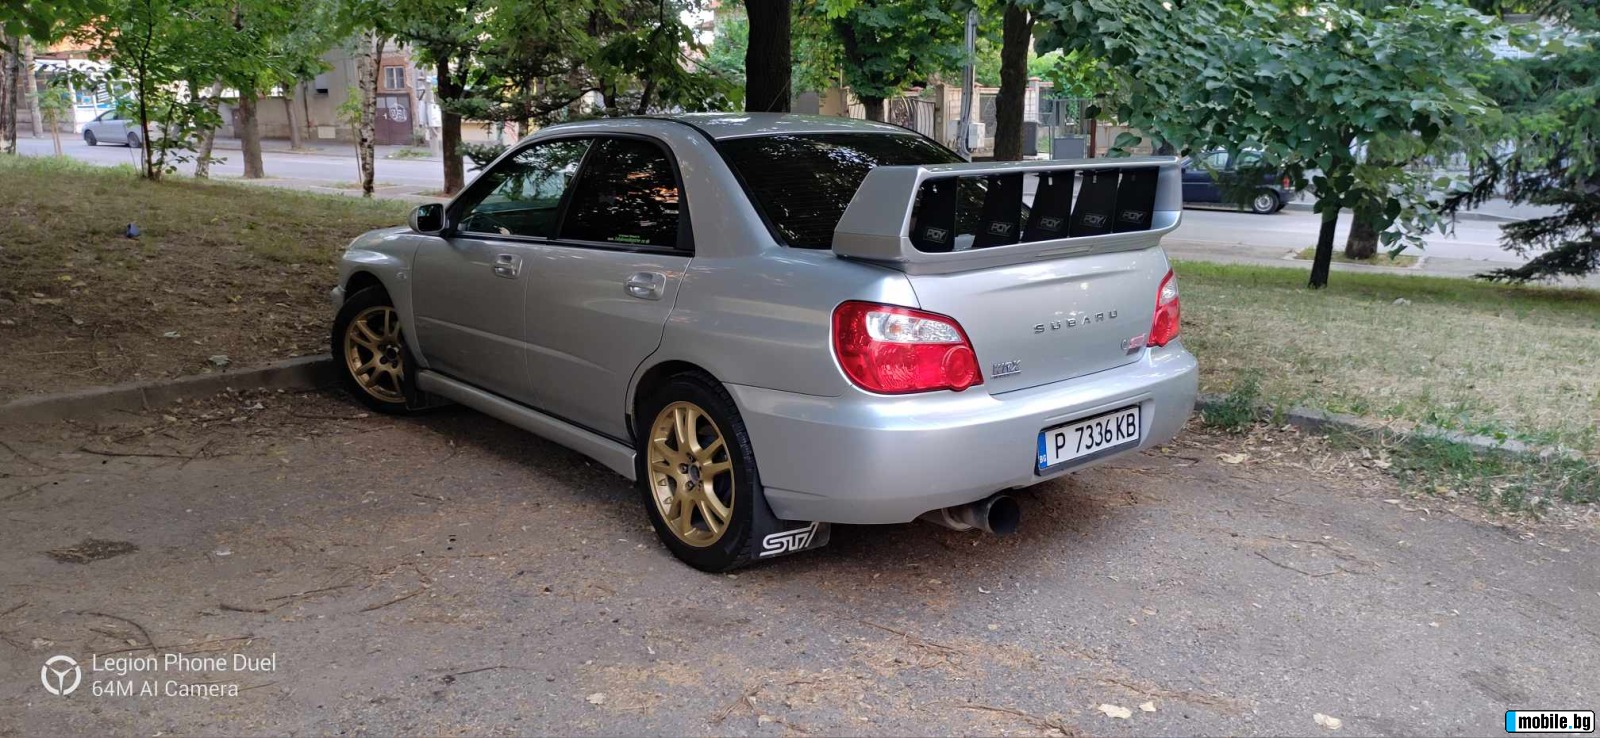 Subaru Impreza wrx | Mobile.bg   2